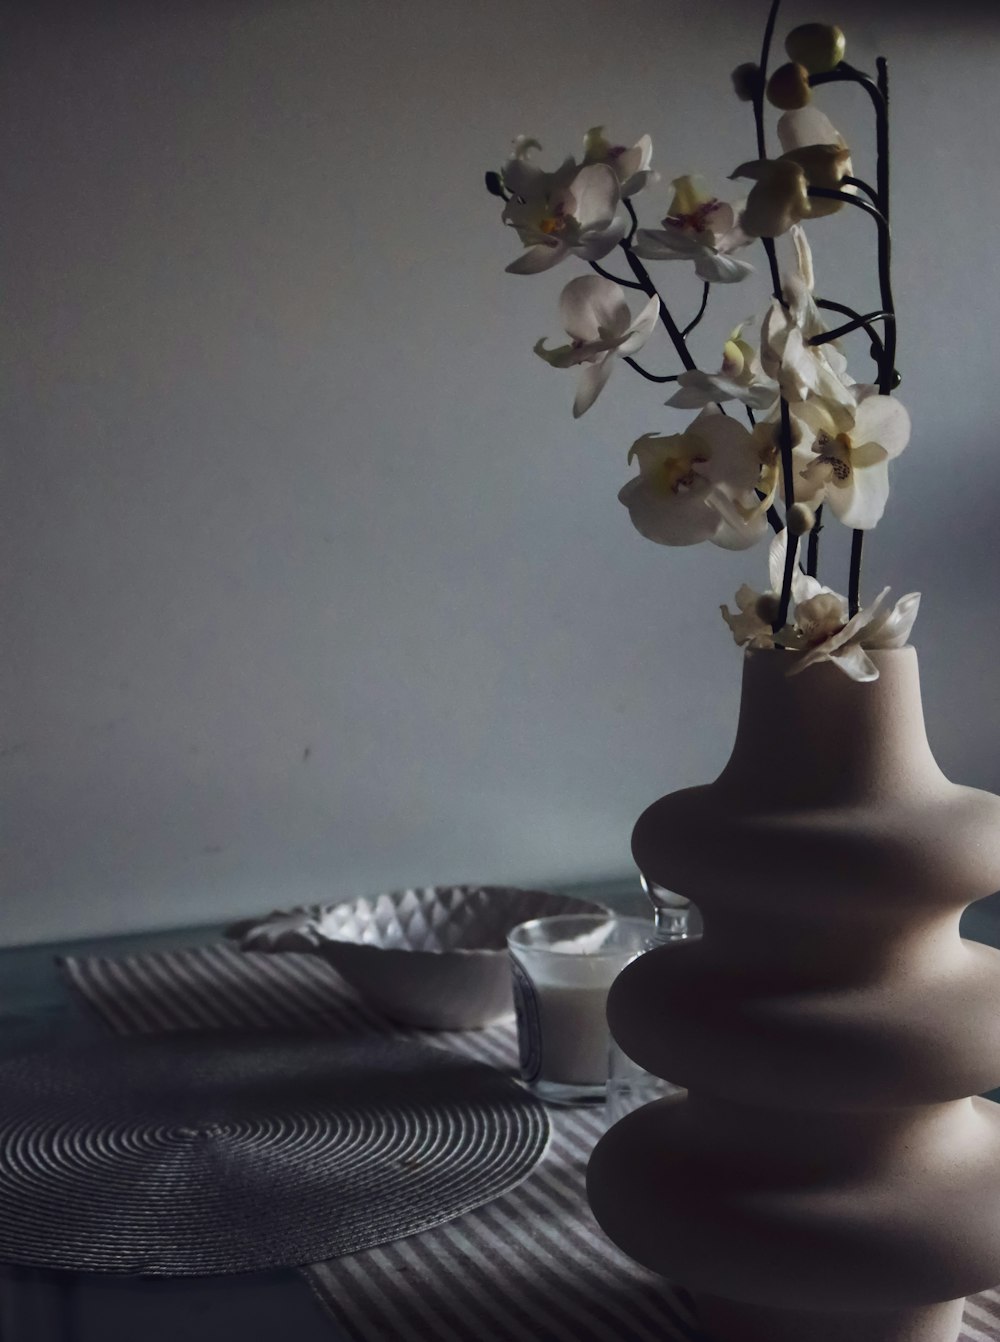 white roses in white ceramic vase on table